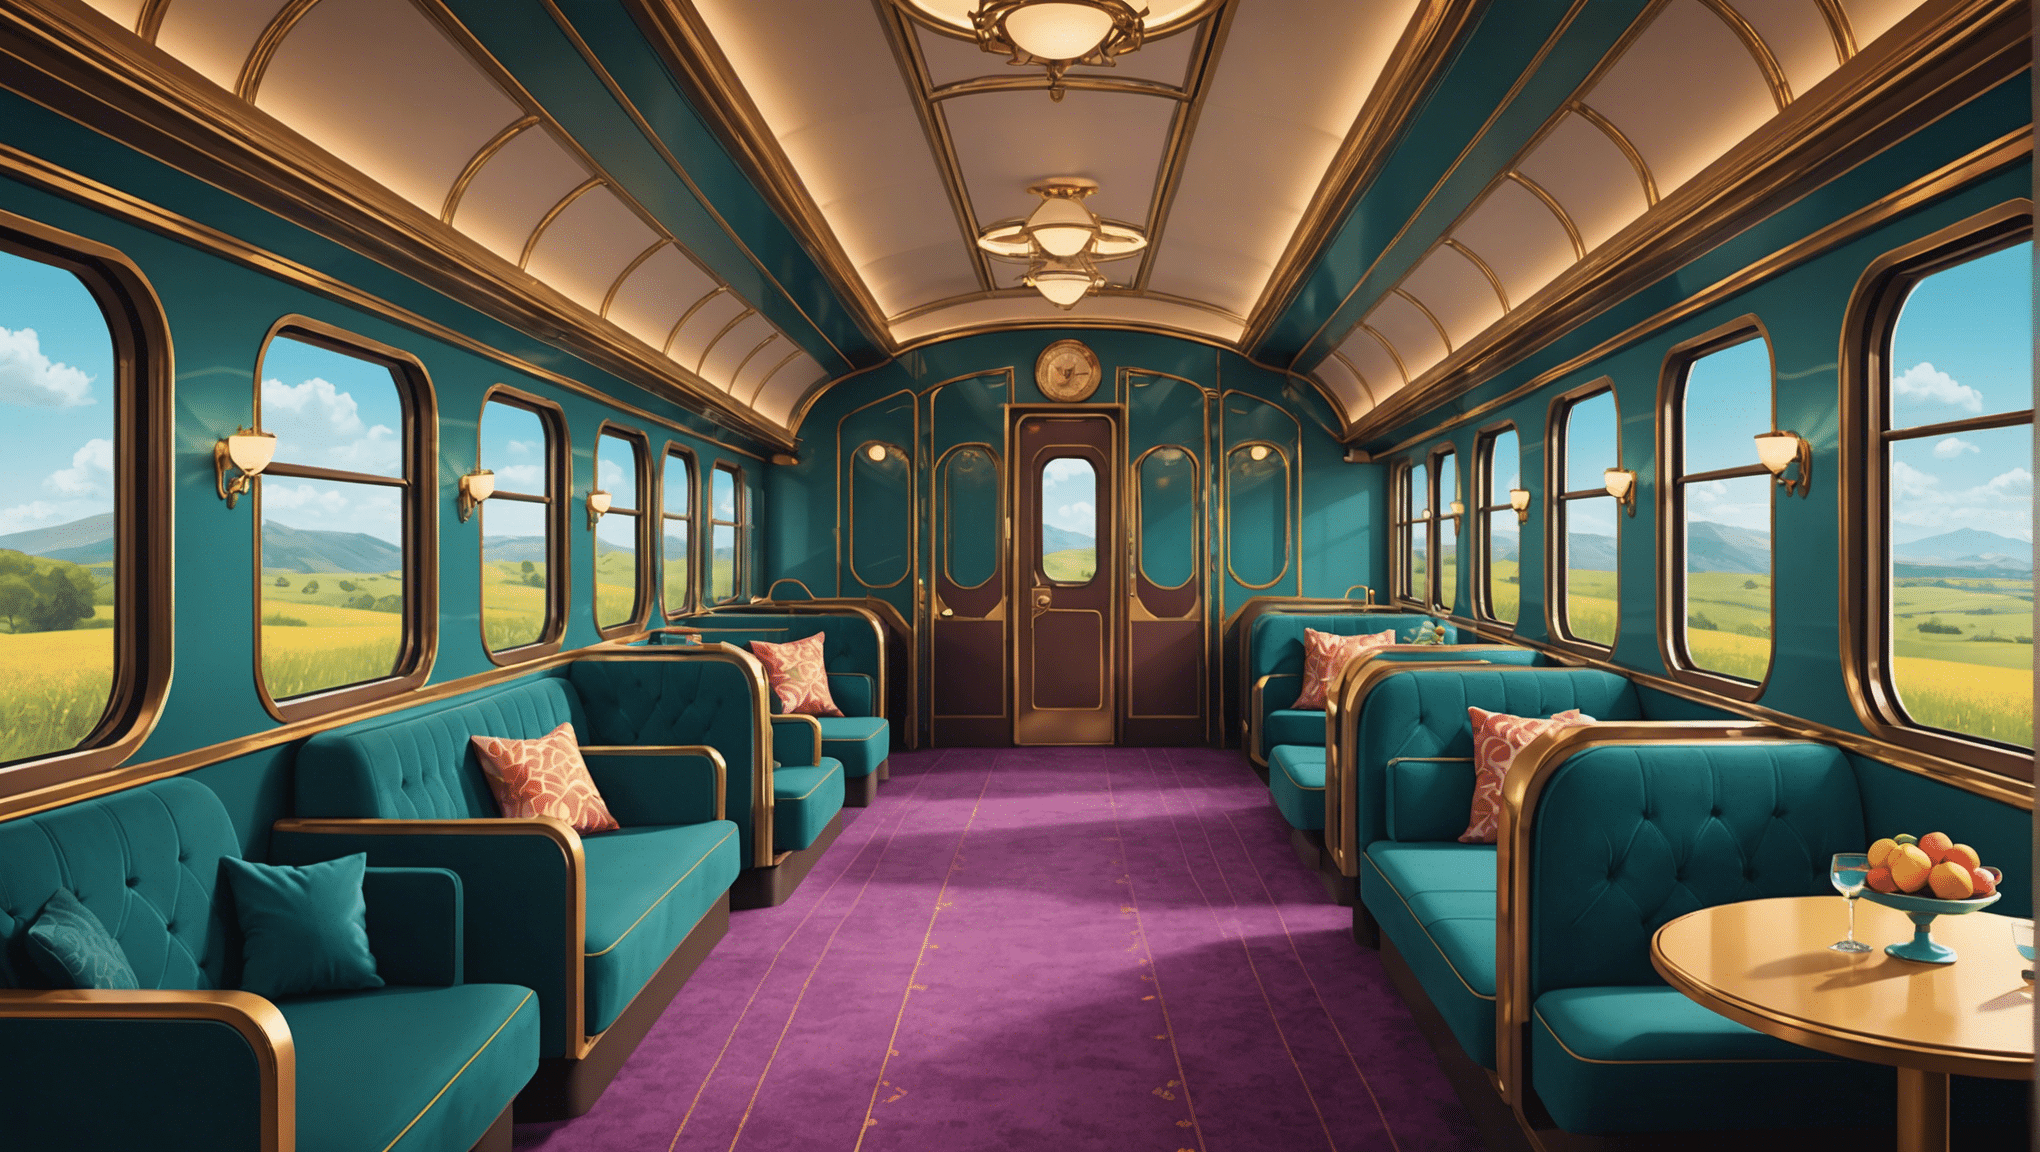 descubra a experiência inesquecível de uma viagem de trem de luxo em ambientes suntuosos, para lembranças duradouras.